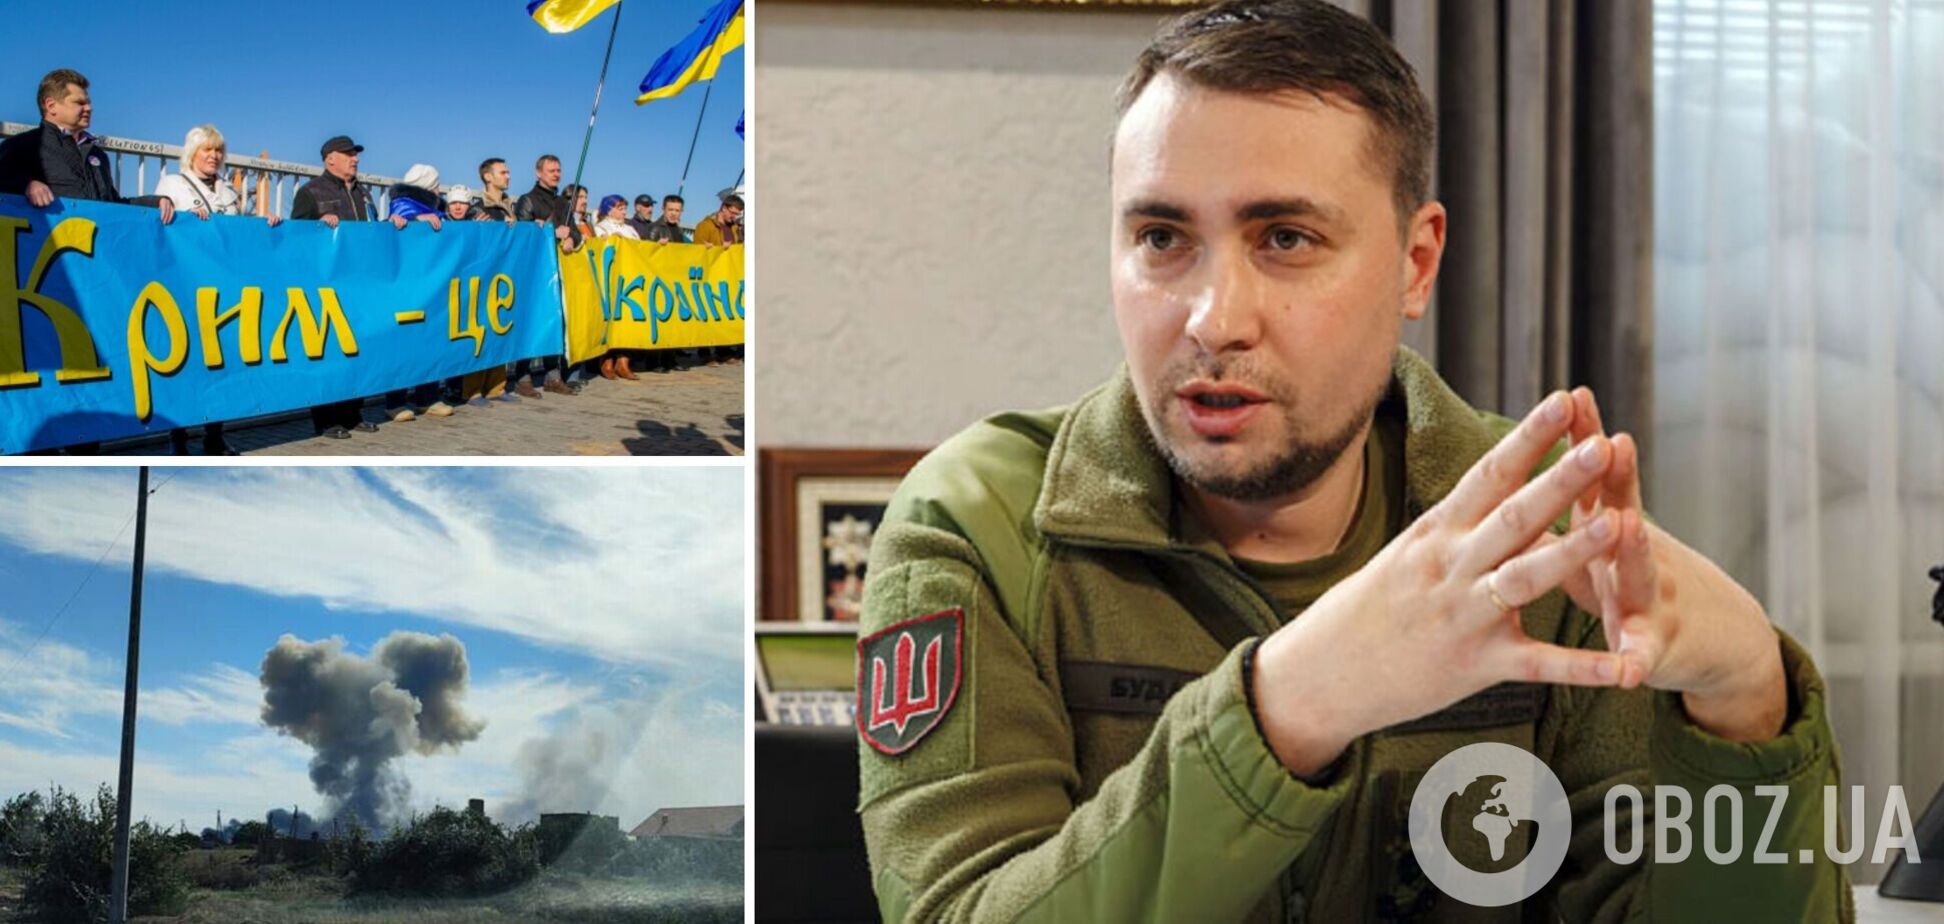 'Атаки будут продолжаться': Буданов объяснил, почему важно давить на российские силы в Крыму